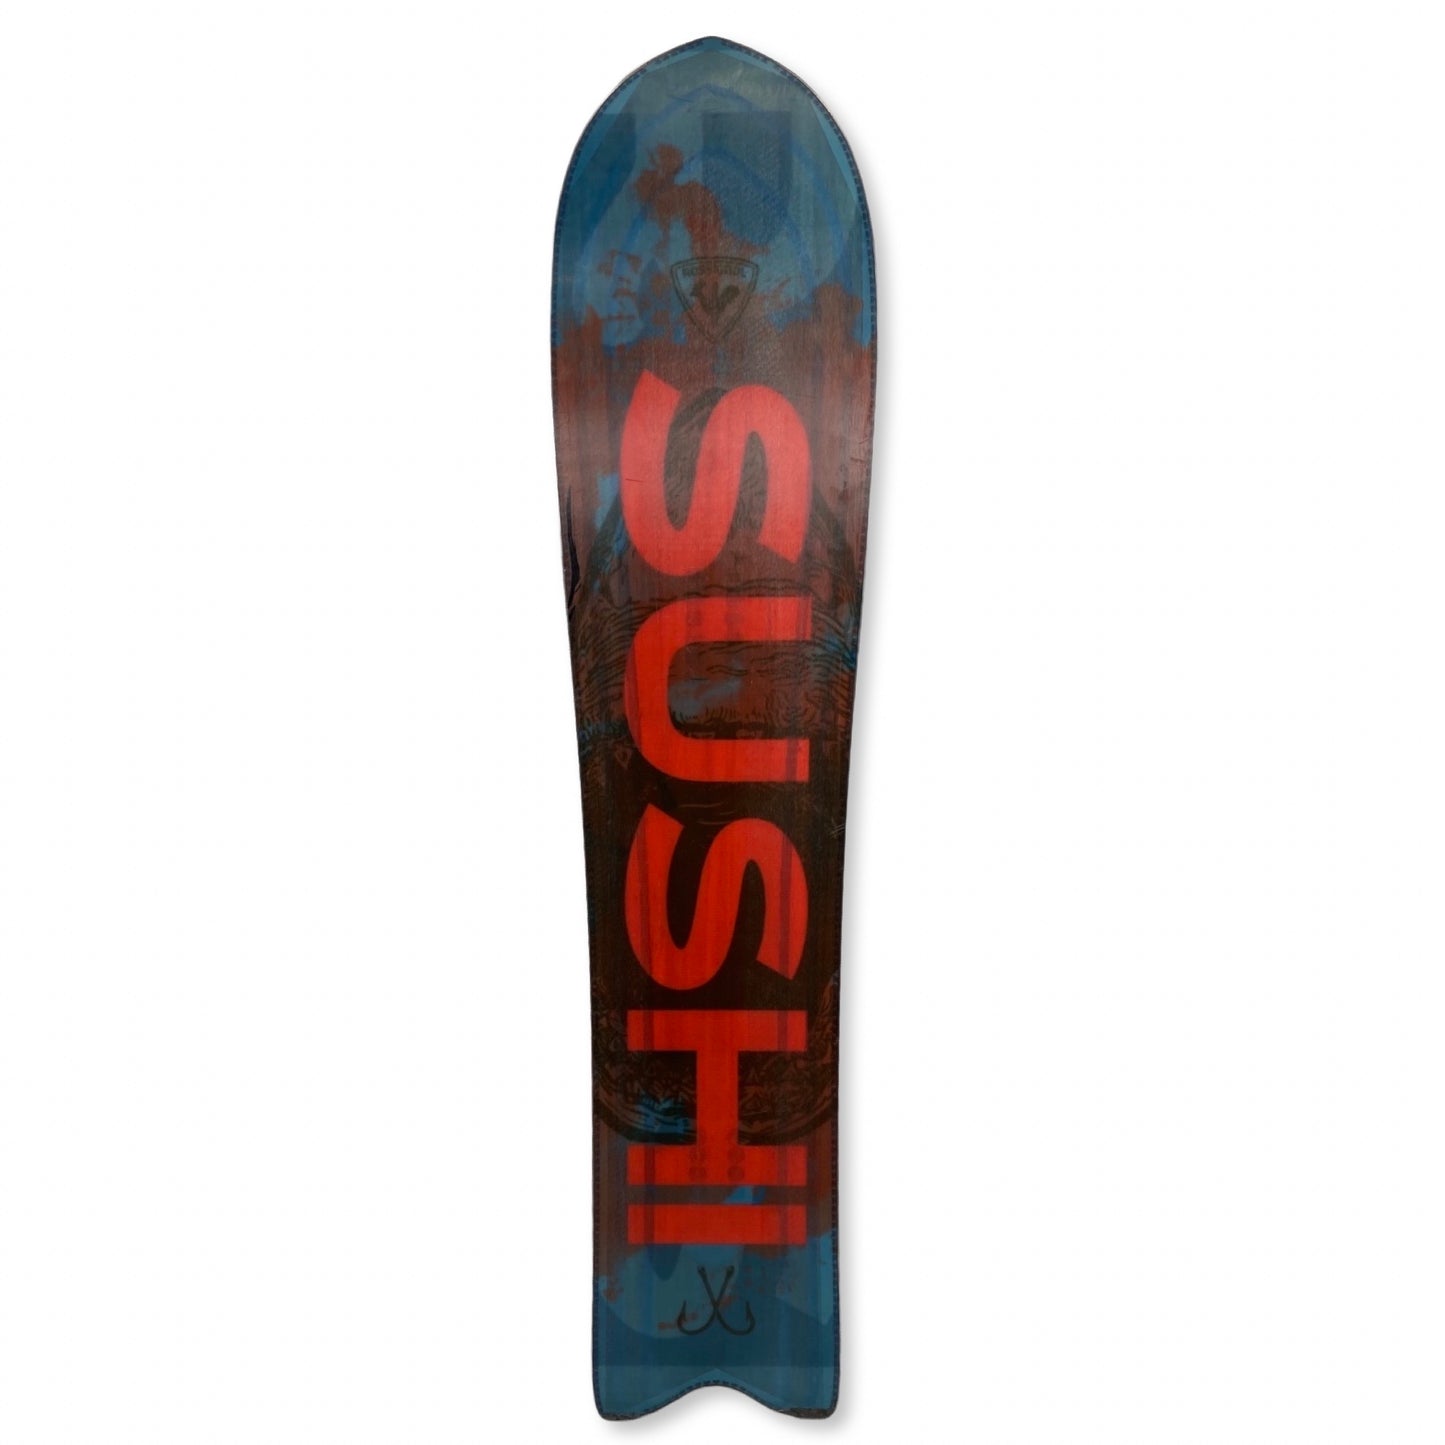 Rossignol XV Sushi Snowboard, 144cm